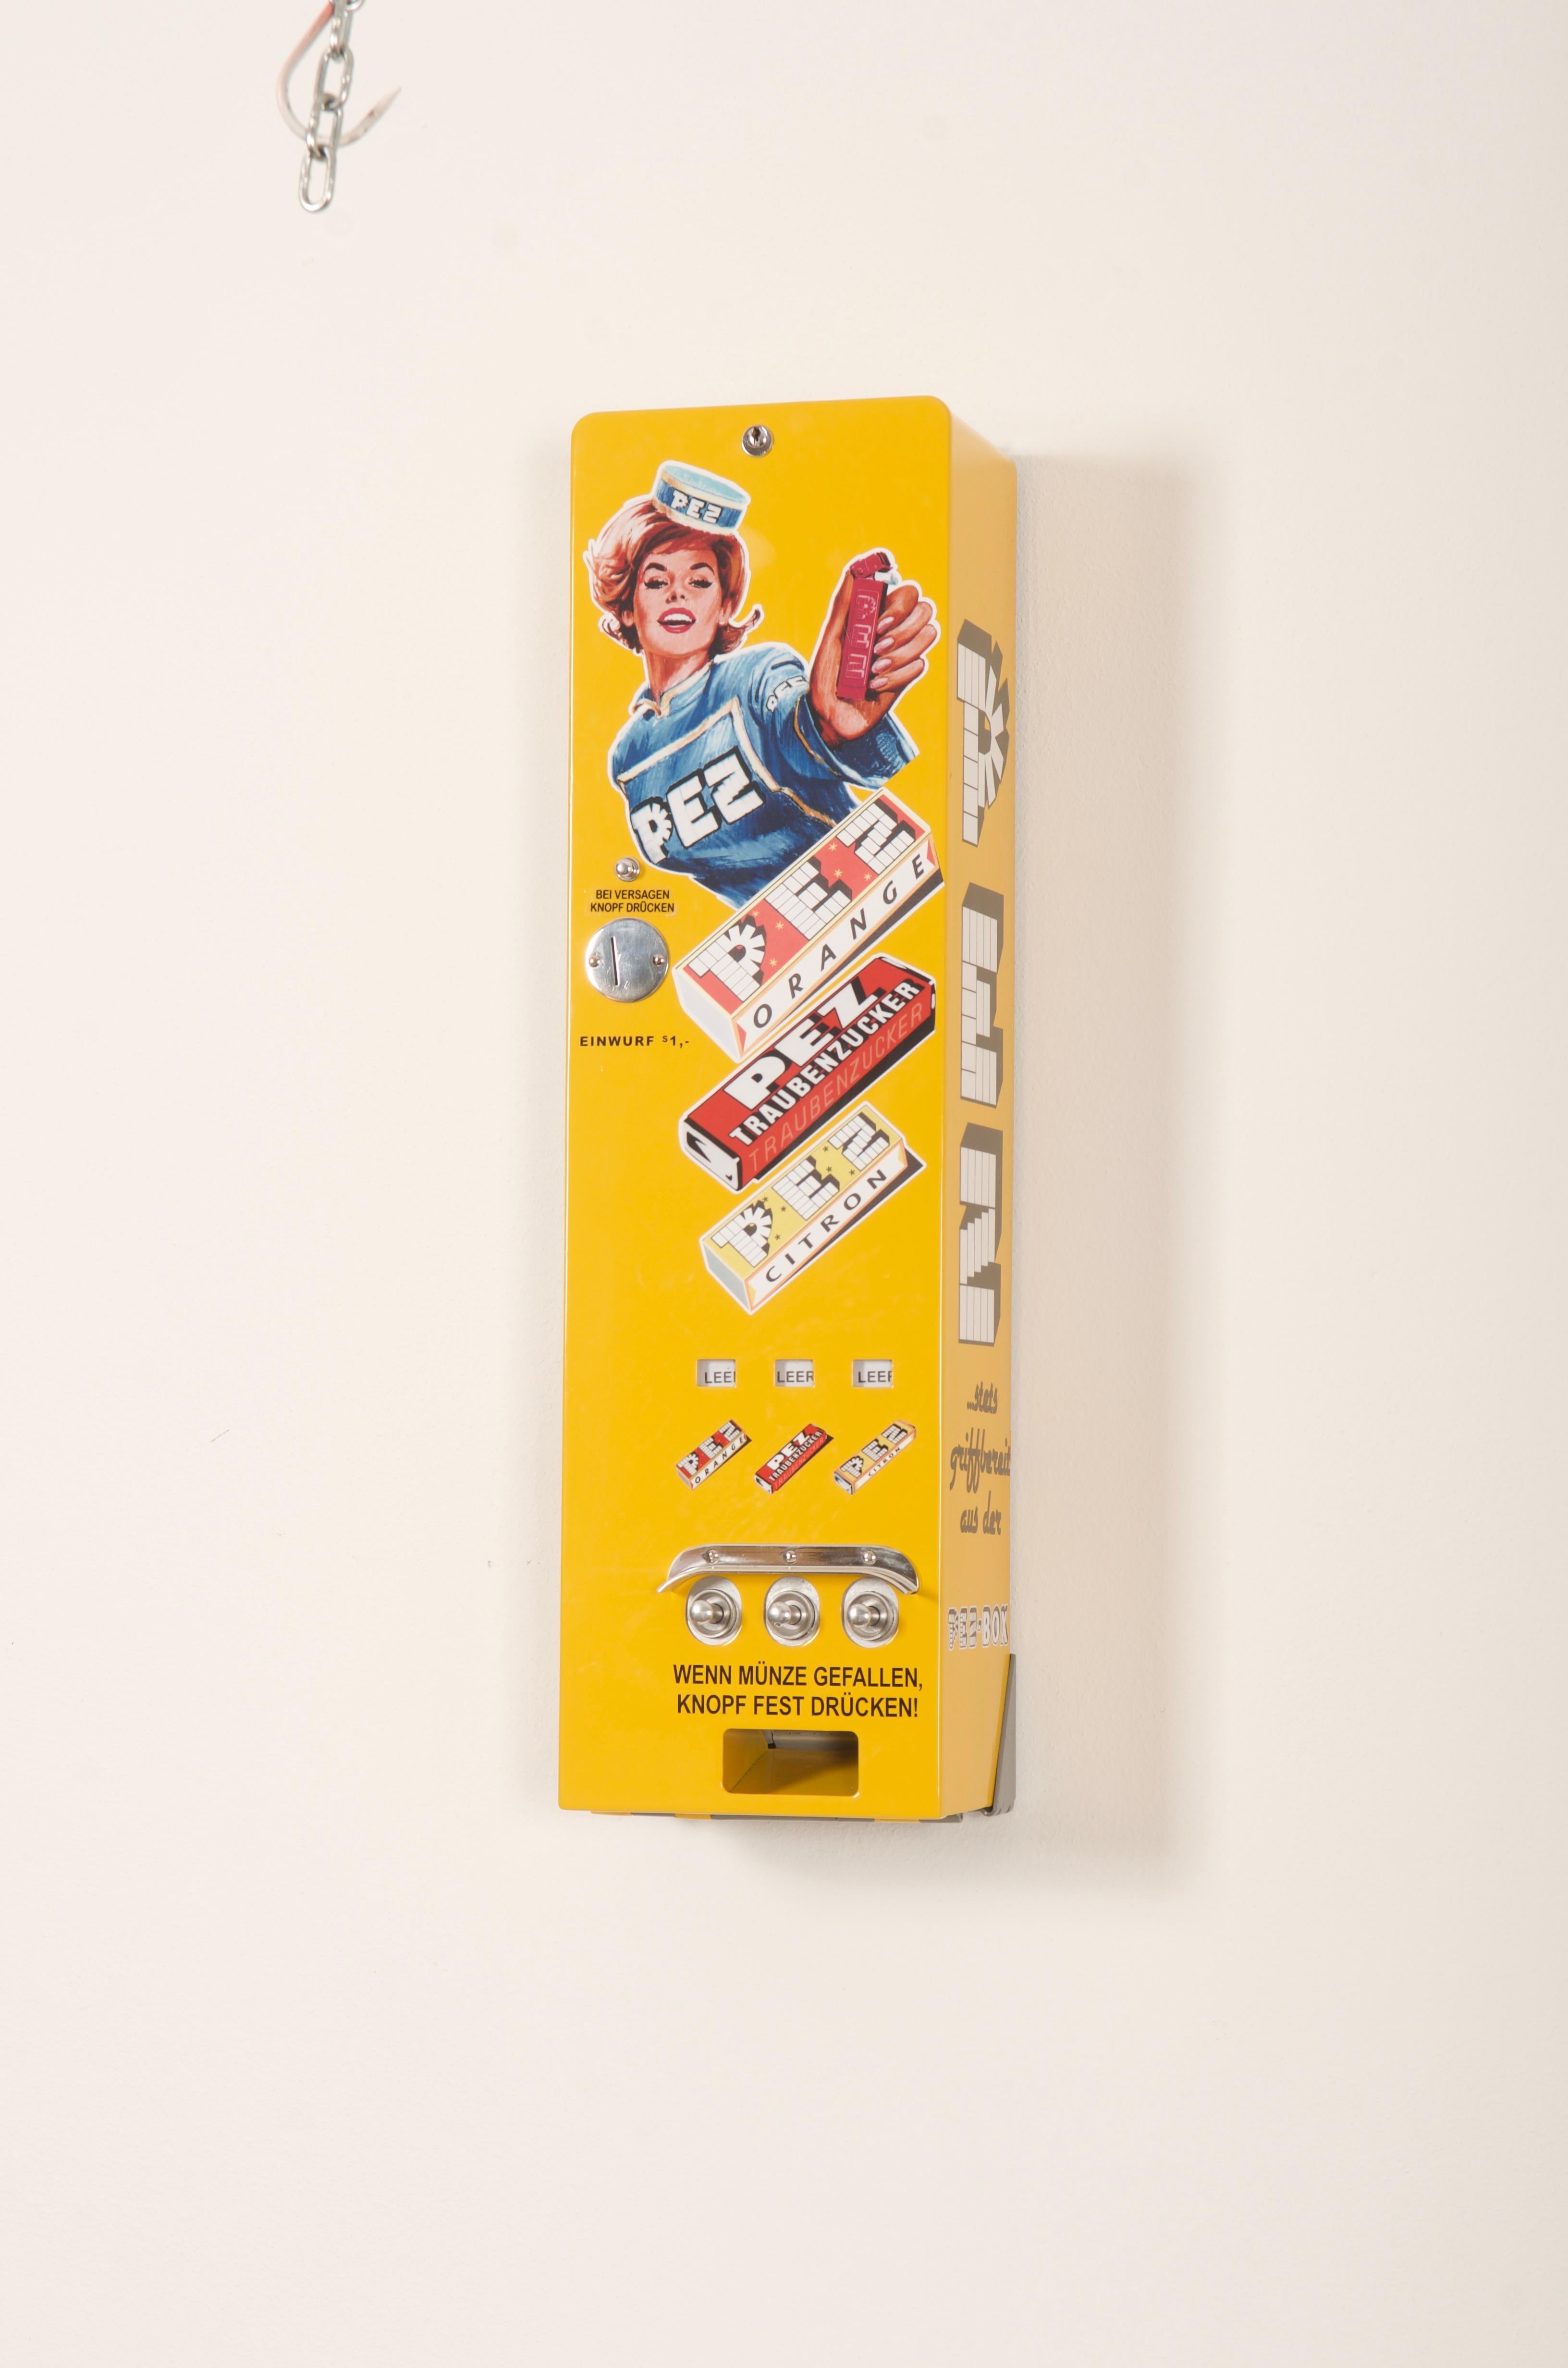 pez vending machine for sale